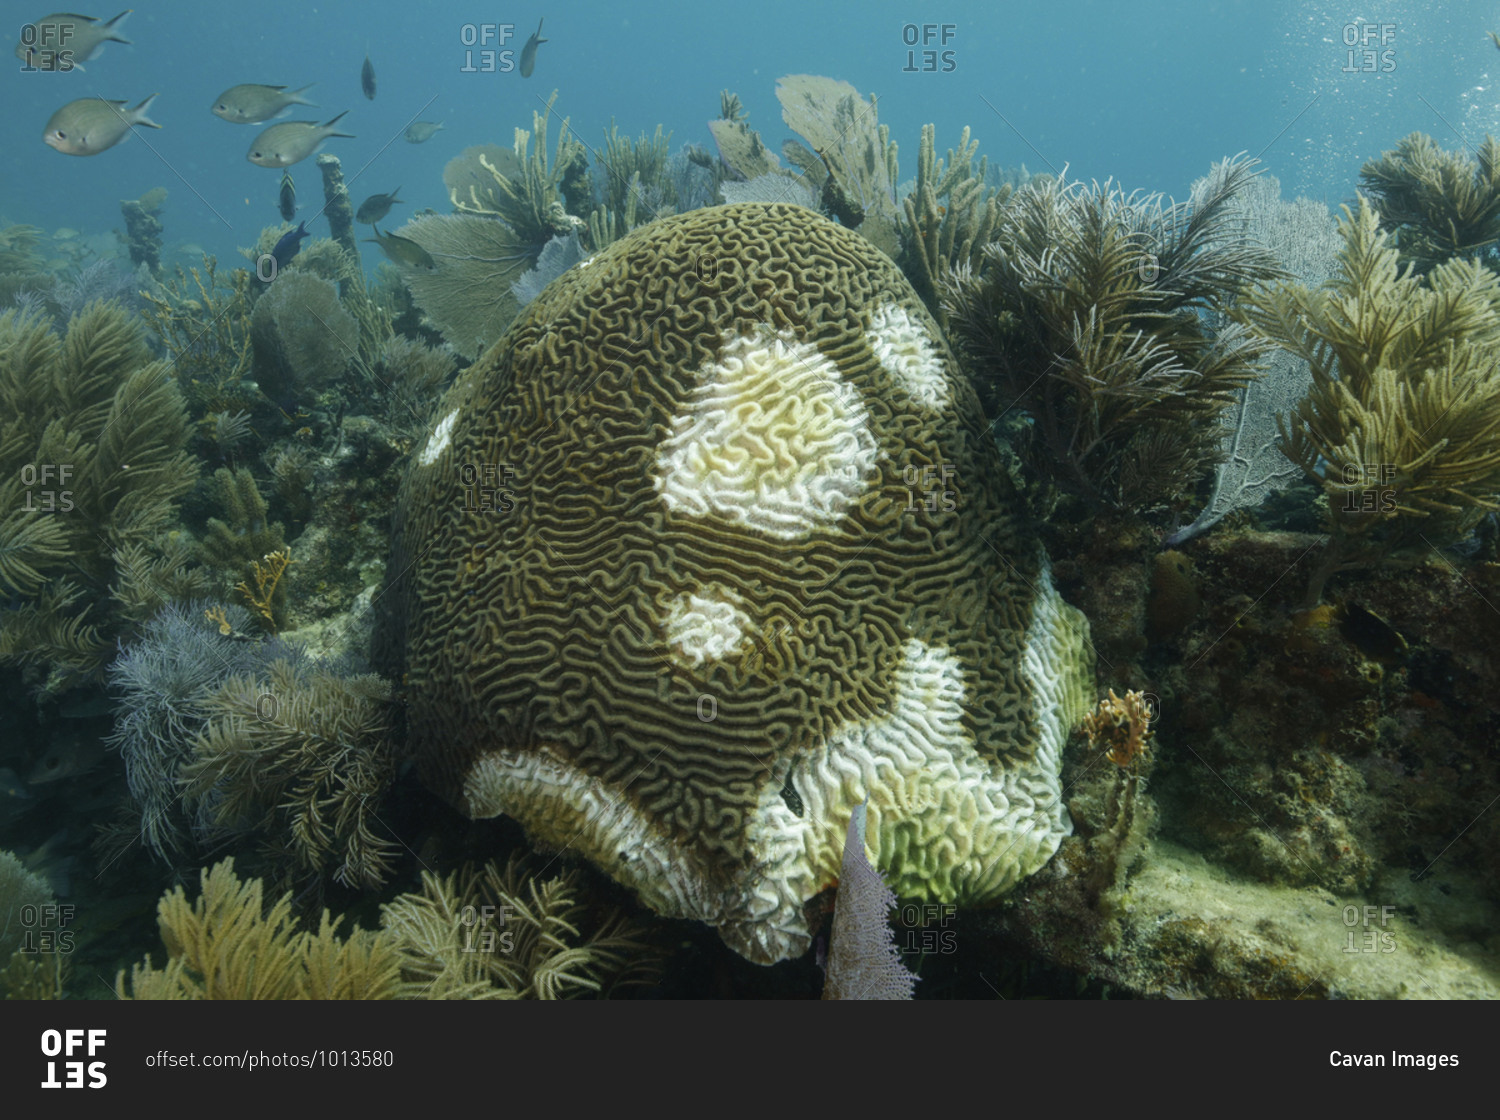 Symmetrical brain coral (Pseudodiploria strigosa), Key Largo, Florida, USA